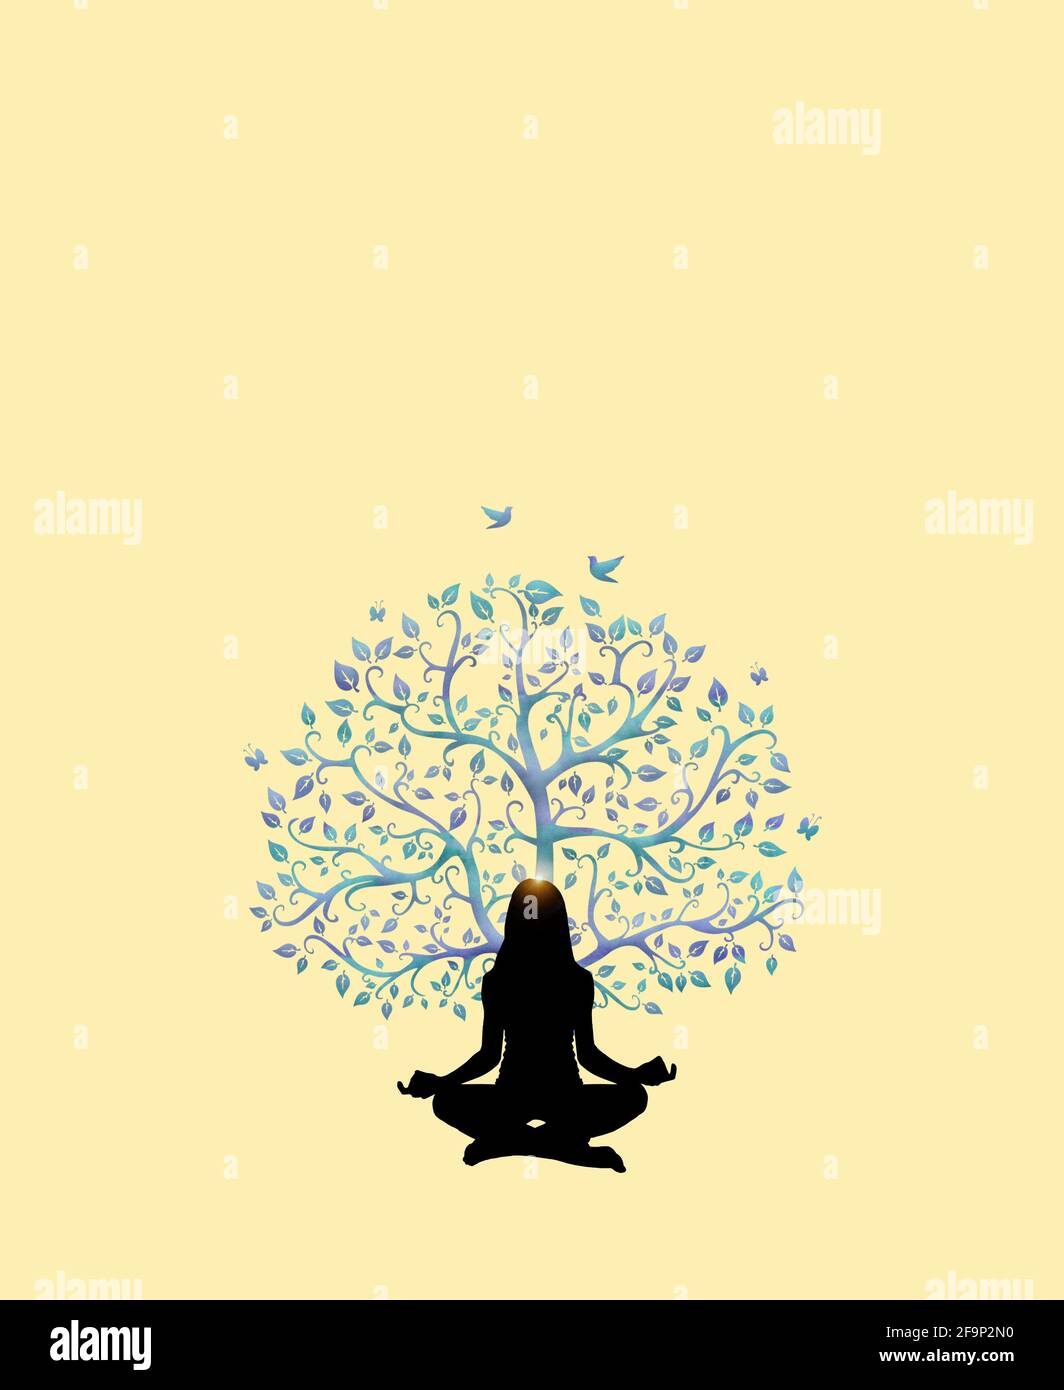 Spiritueller Hintergrund mit menschlicher Silhouette meditierend und  Lebensbaum isoliert In farbigem Hintergrund Stockfotografie - Alamy